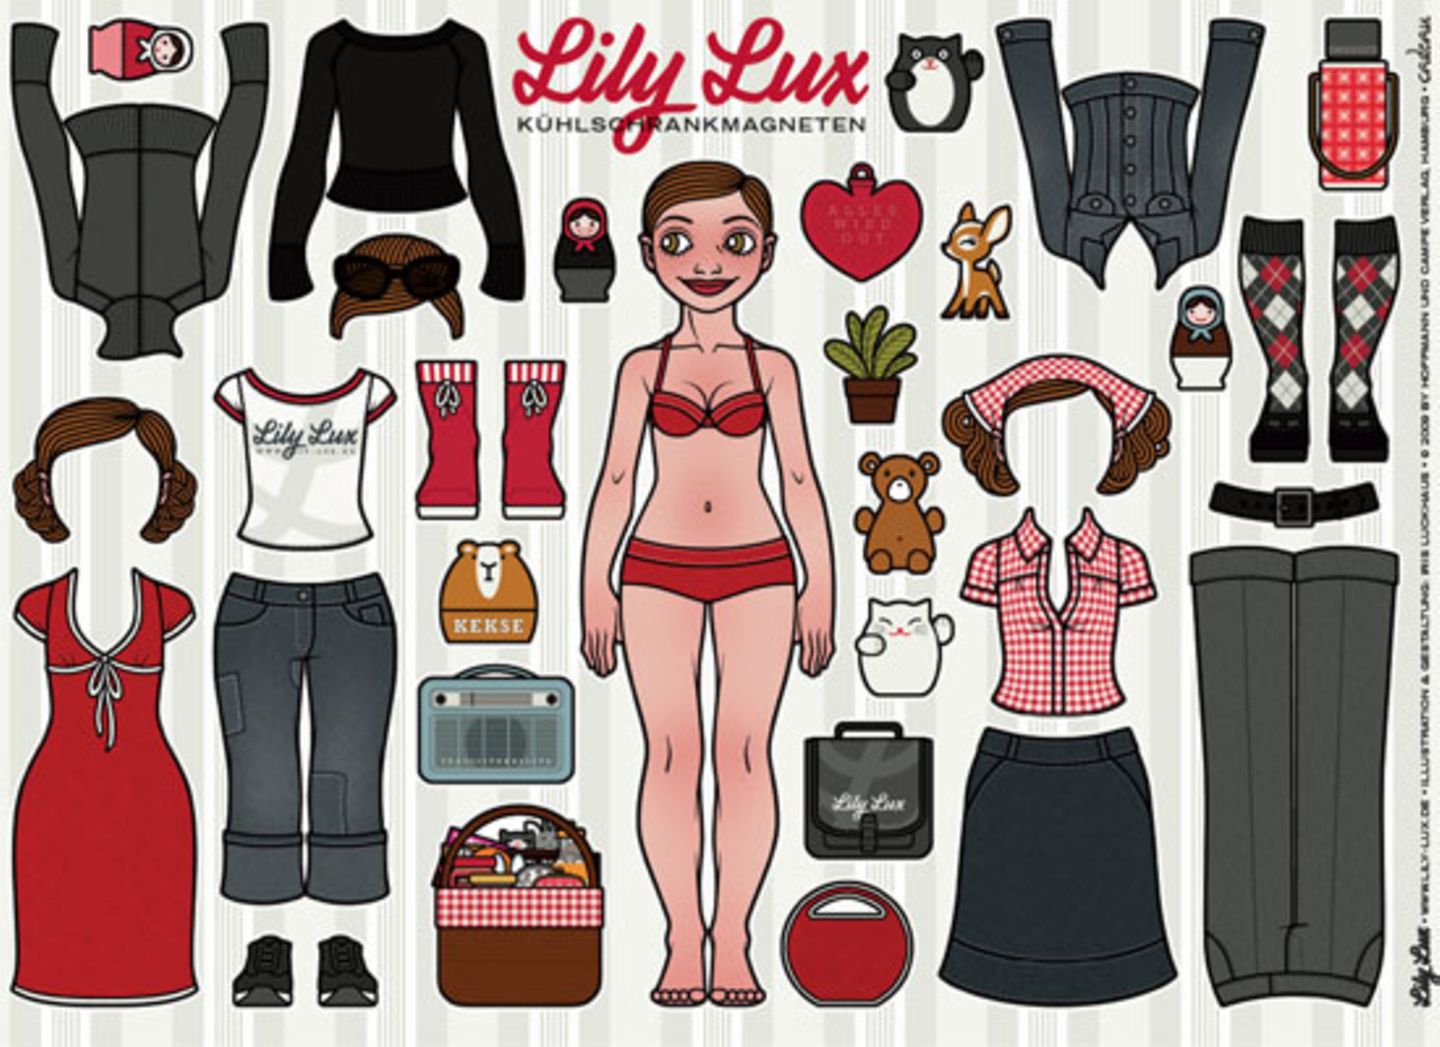 Mädchenspielzeug für Frauen    Wer ist Lily Lux? Nun, sie ist ein Mädchen, das das Leben liebt und gerne Sachen erfindet. Feiertage, Sehenswürdigkeiten, ganz egal! Sich selbst erfindet sie am allerliebsten - und das jeden Tag neu. Lily begeistert sich für Zufälle, Wunder, Problemzonen und Komplimente. Auf ihrer Website, der wunderbaren Welt der Lily Lux, könnt ihr Neuigkeiten, Geschenke, Icons, Spiele und Grußkarten entdecken. Ein Traum für alle kleinen Mädchen jenseits der 25, die einfach nicht erwachsen werden wollen. Und sooooo süß! Mit den Magneten für den Kühlschrank könnt ihr Lily je nach Tageslaune stylen. Spaßfaktor: HOCH!     Iris Luckhaus und Matthias Klesse "Die wunderbare Welt der Lily Lux" Cadeau bei Hoffmann & Campe 64 Seiten, Pappband, durchgehend farbig illustriert 14,95 EUR ISBN: 978-3-455-38053-8